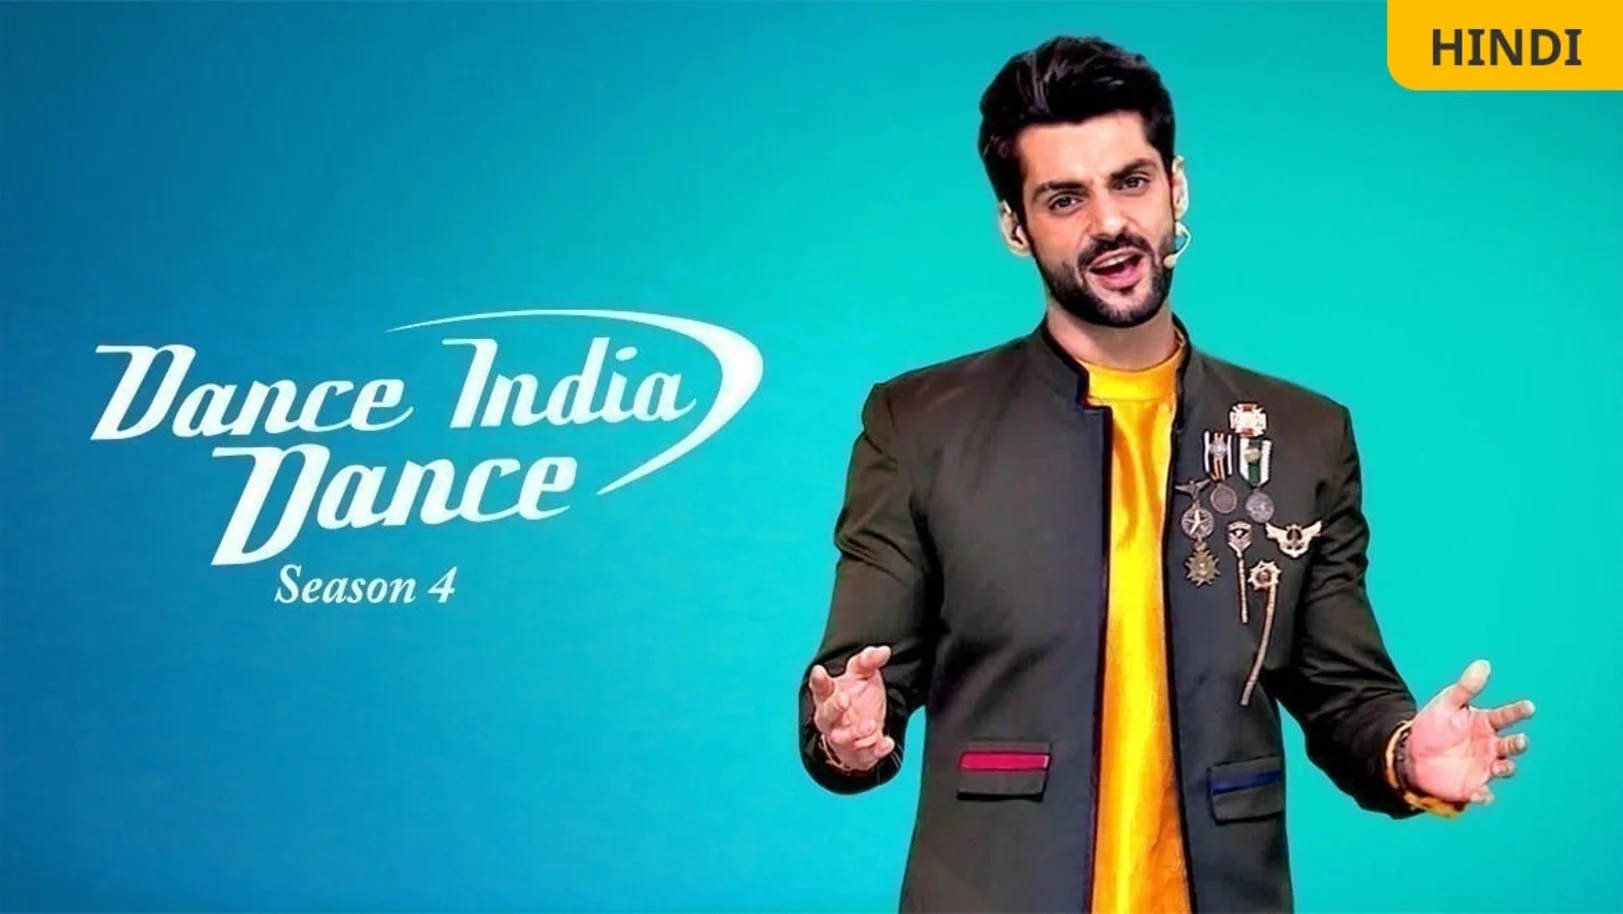 Dance India Dance Season 4 TV Show